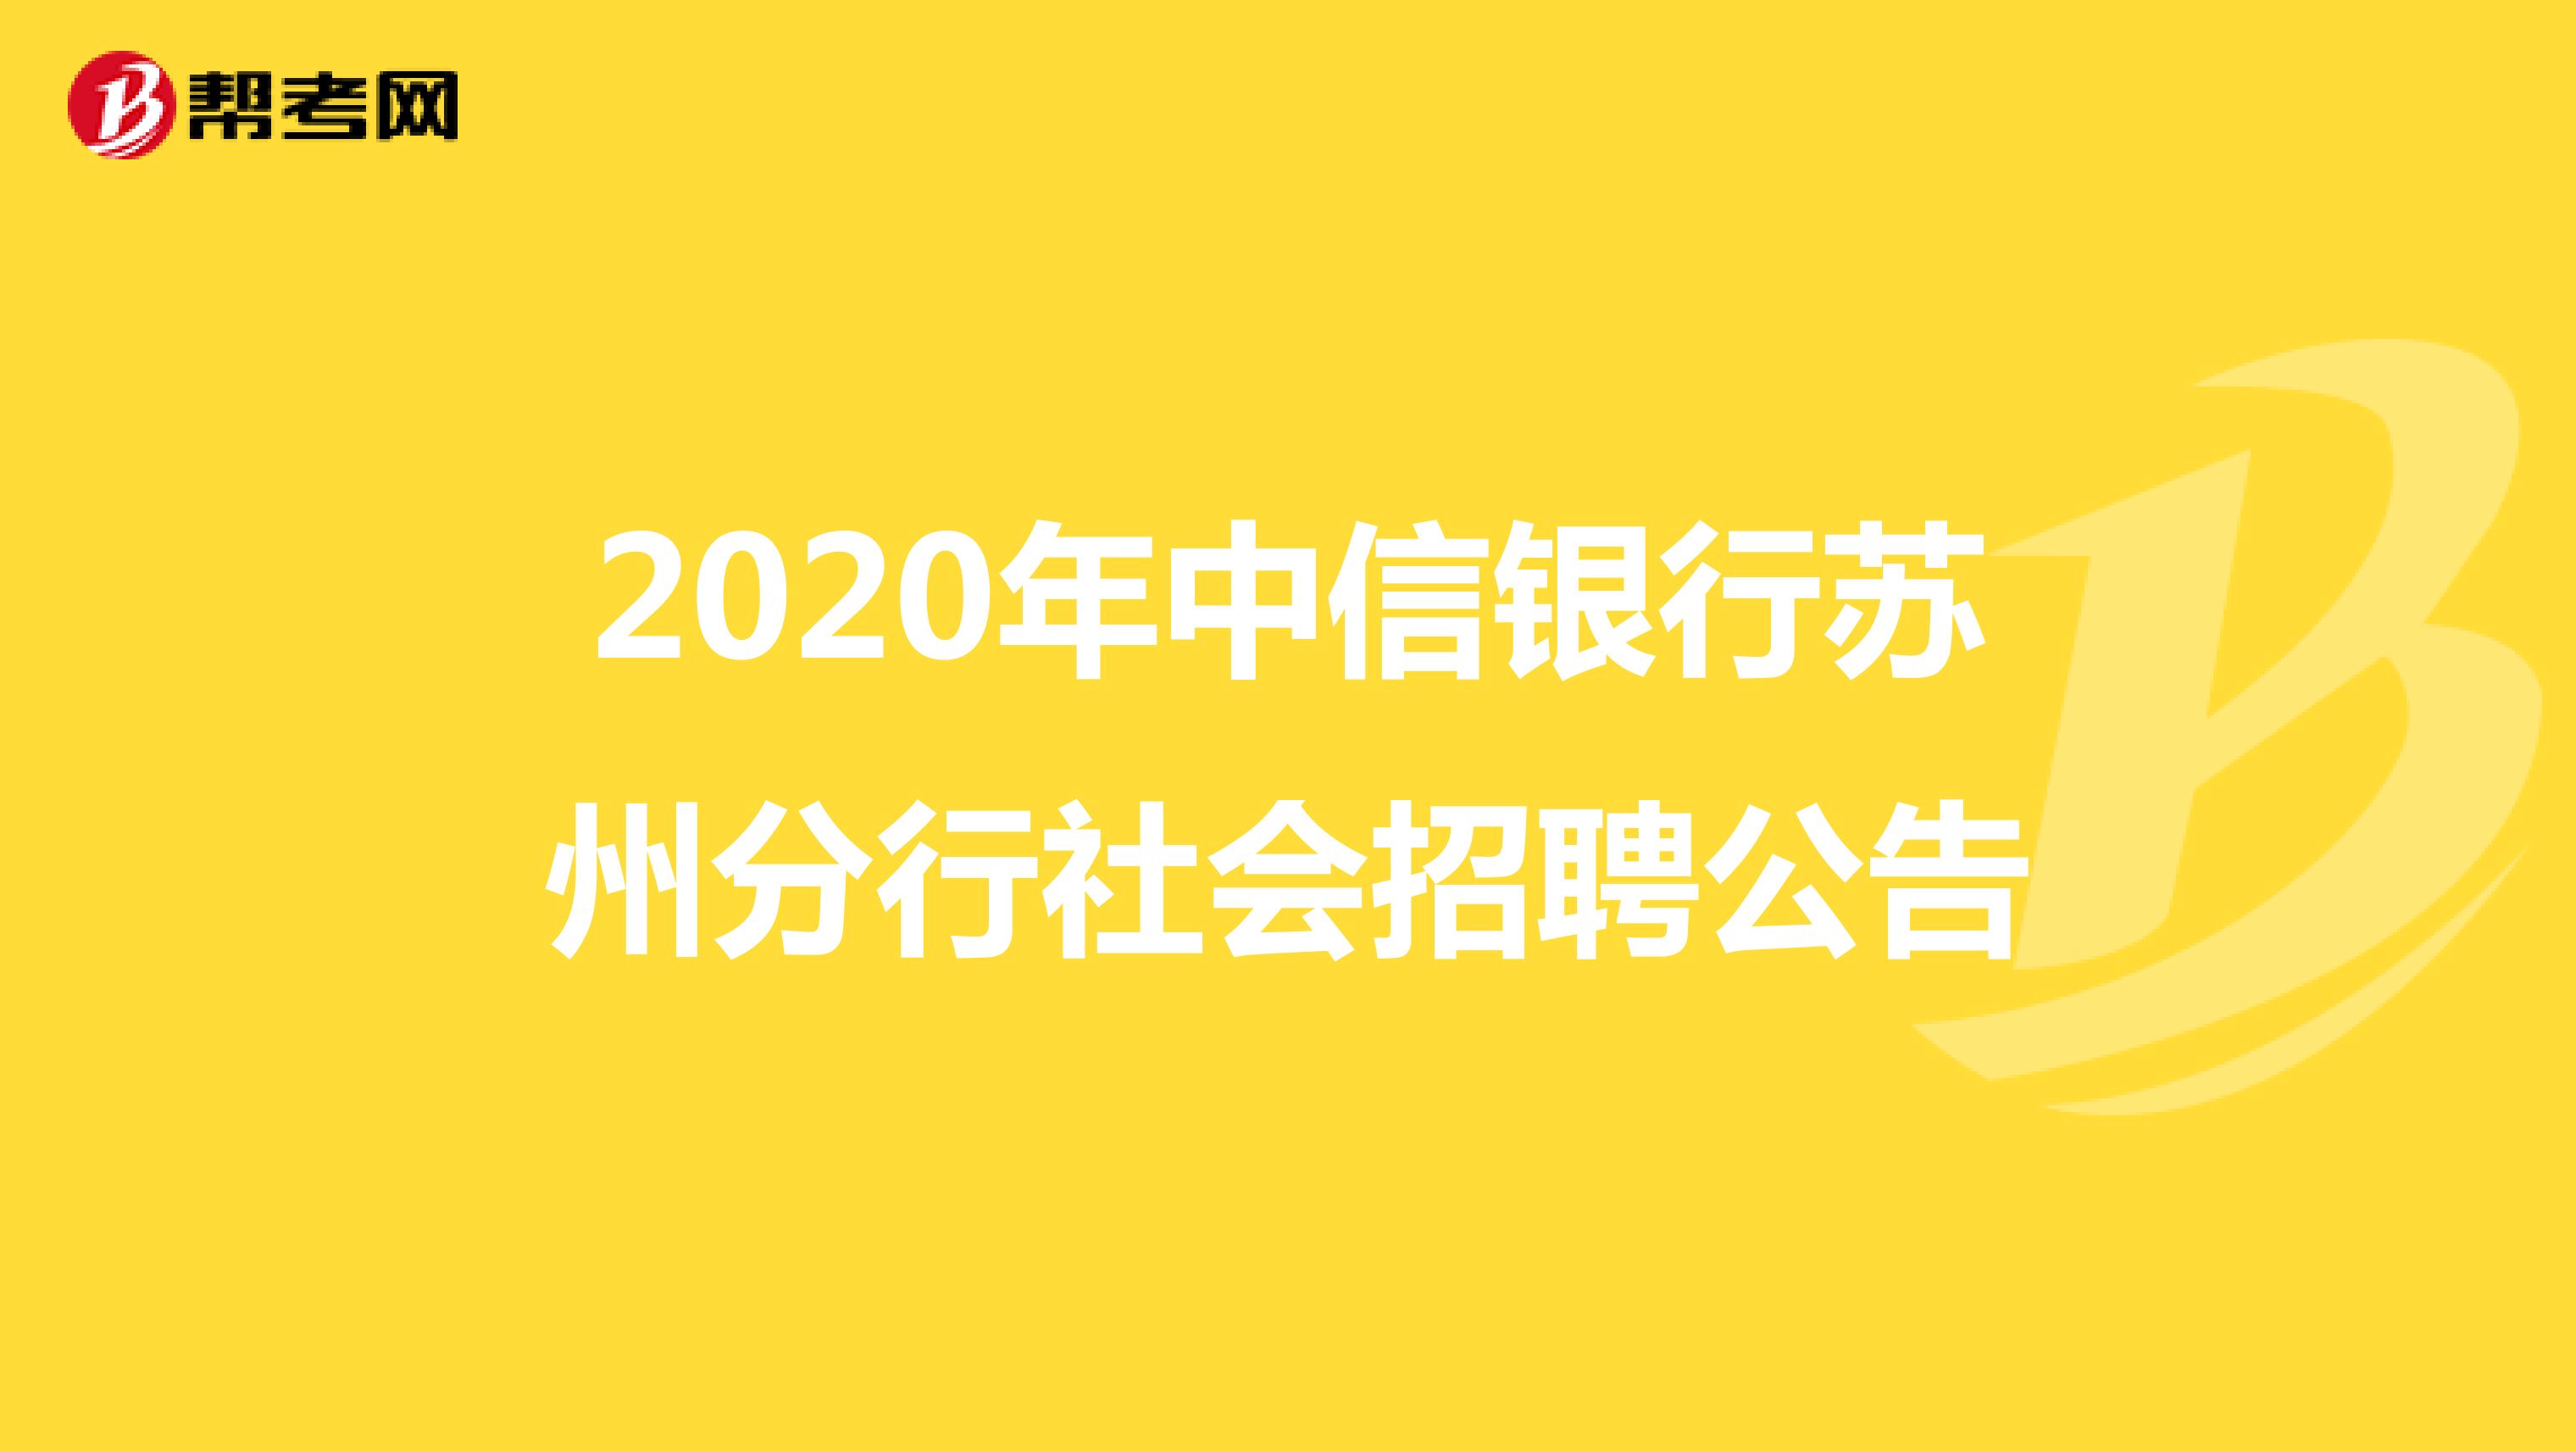 2020年中信银行苏州分行社会招聘公告